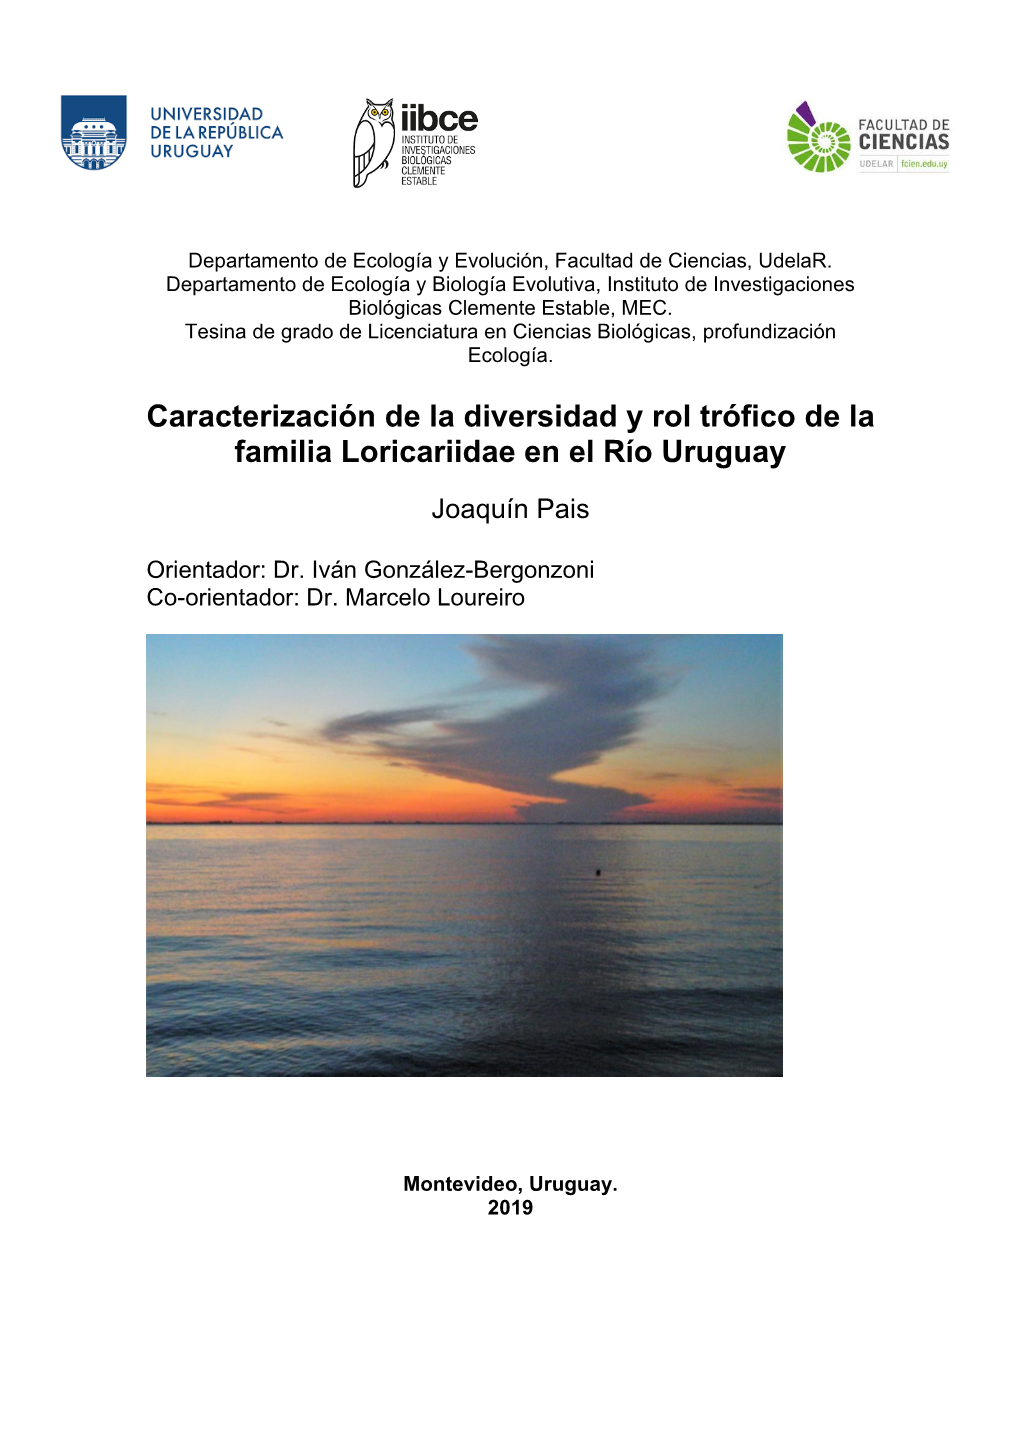 Caracterización De La Diversidad Y Rol Trófico De La Familia Loricariidae En El Río Uruguay